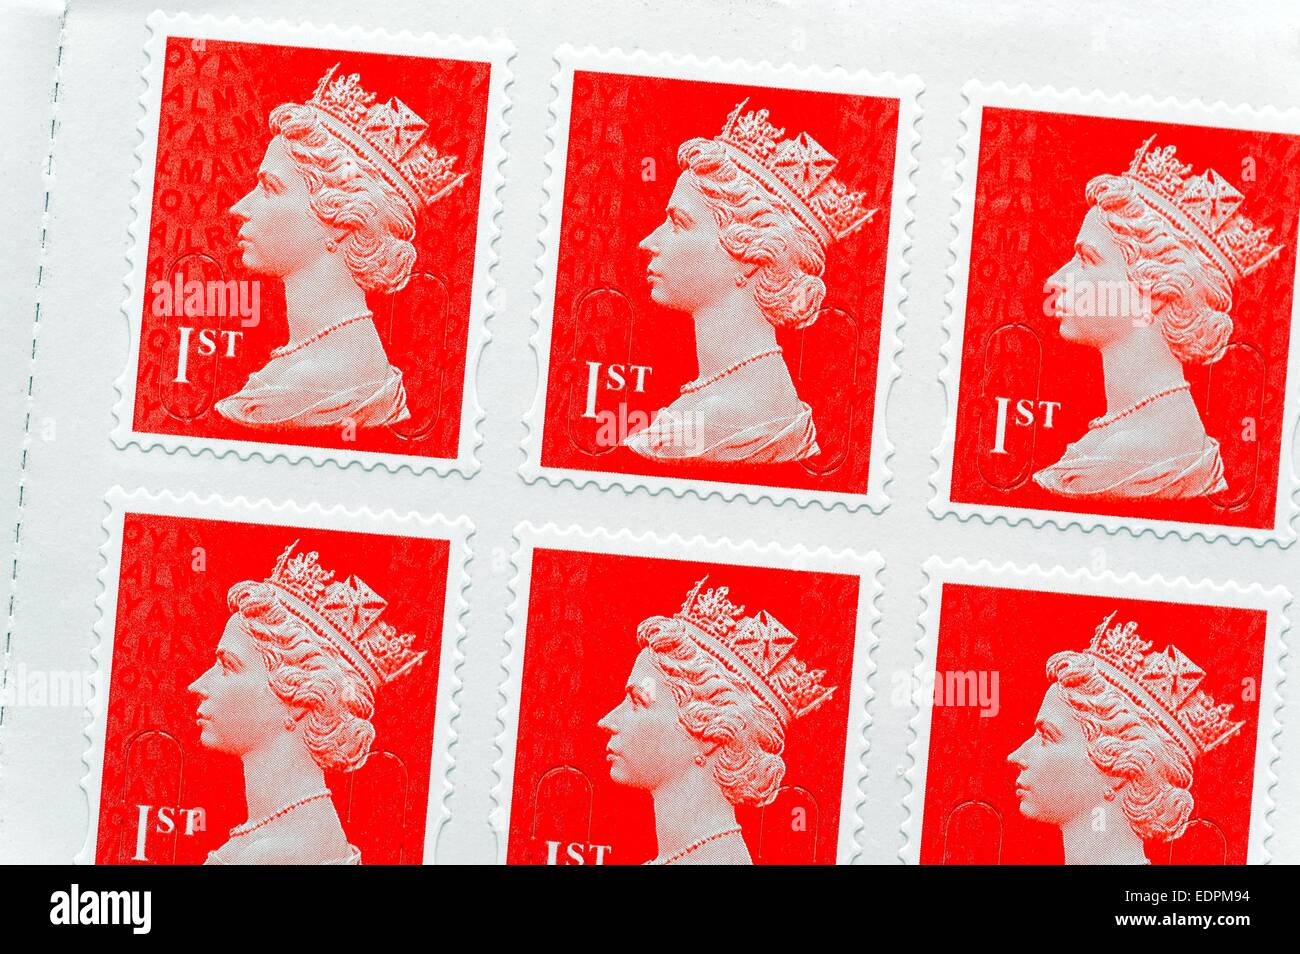 British Red erstklassige Königliche Post Briefmarken Stockfoto